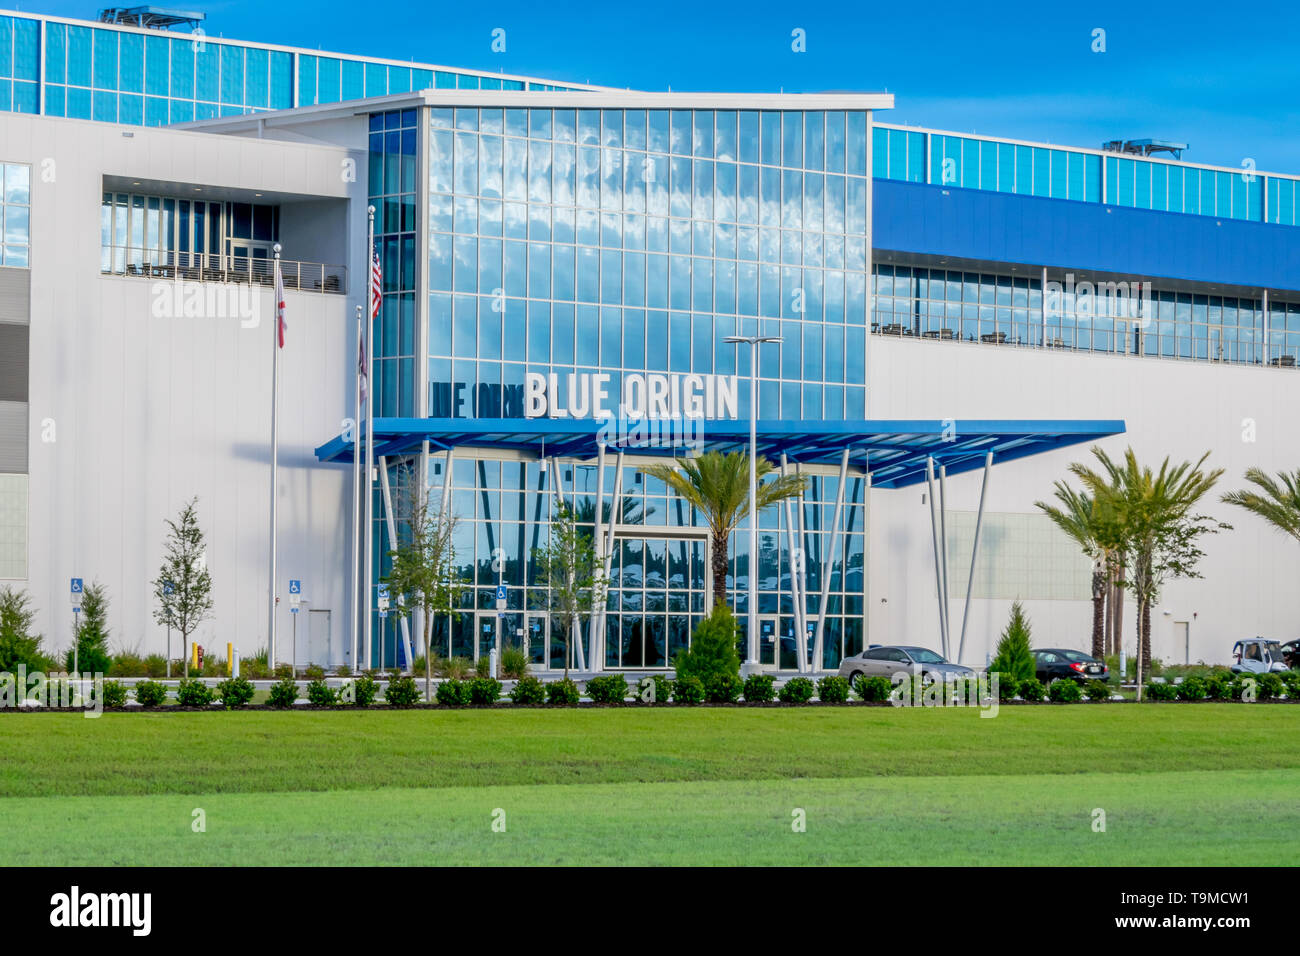 Cap Canaveral, Floride - 12 mai 2019 : lancement d'origine bleu Installation de production de véhicules a été fondée par Jeff Bezos et est situé près de l'entrée de t Banque D'Images